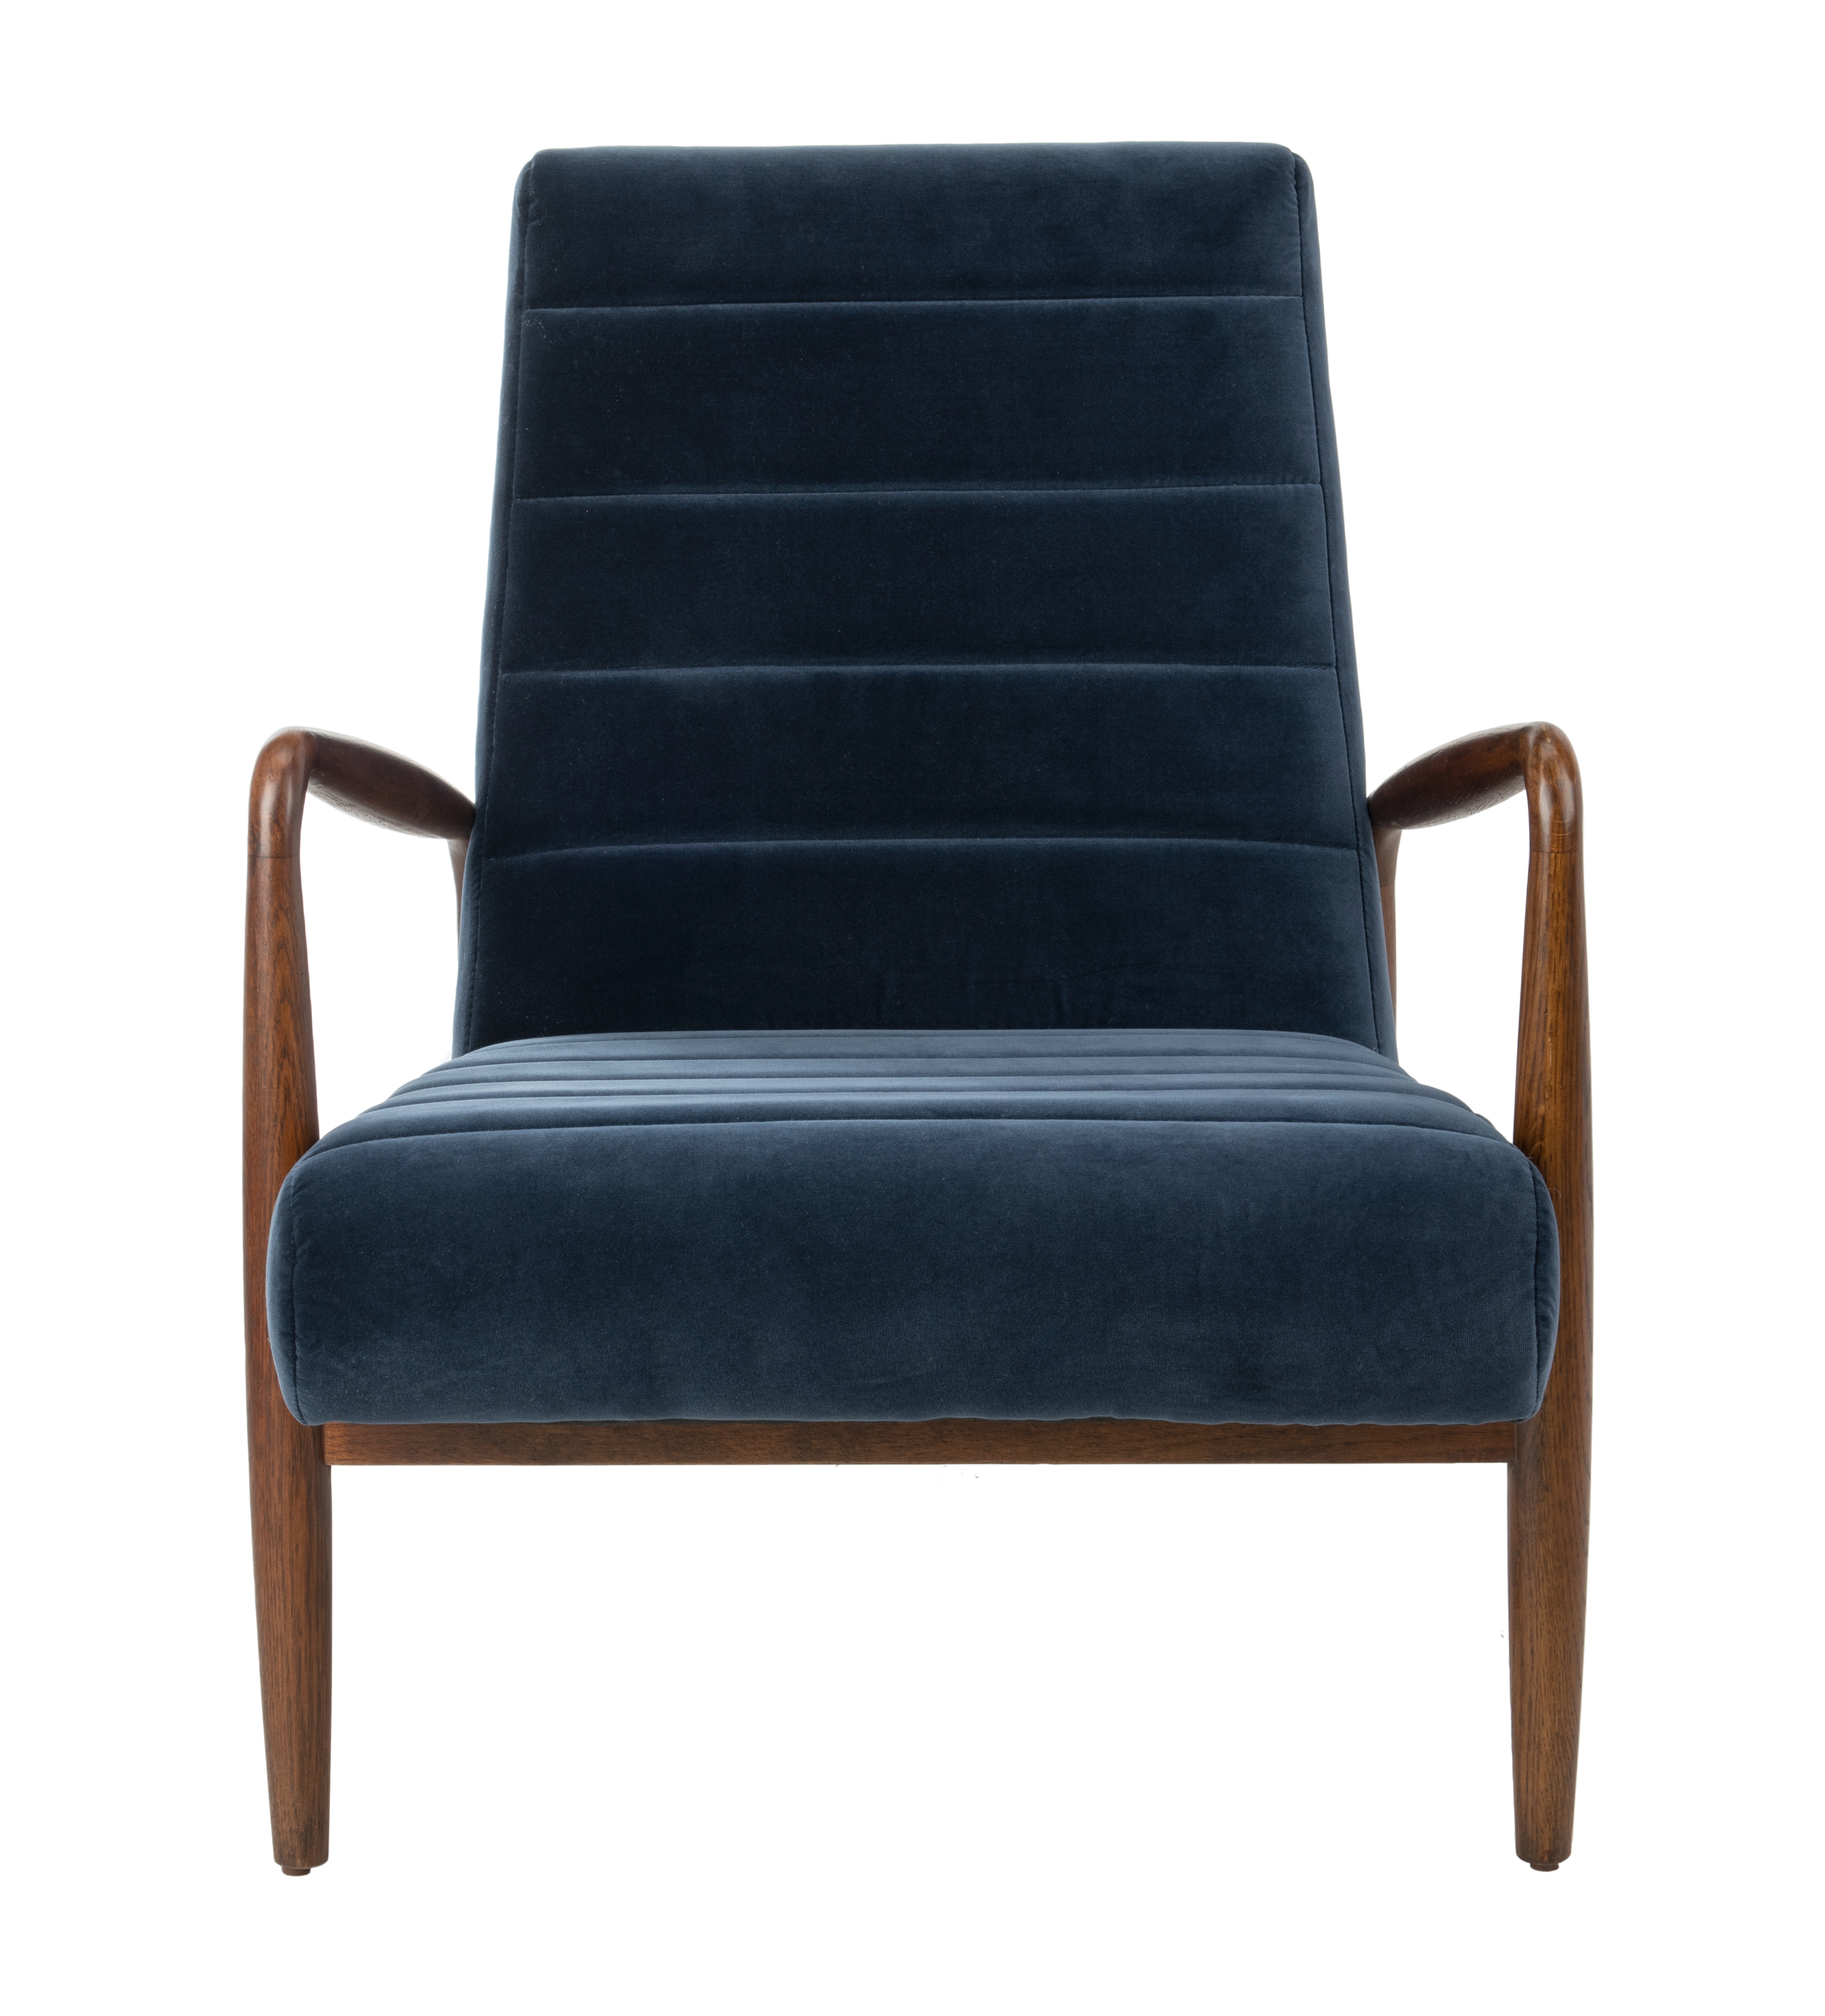 Willow Channel Tufted Arm Chair - Navy/Dark Walnut - Safavieh - Image 1